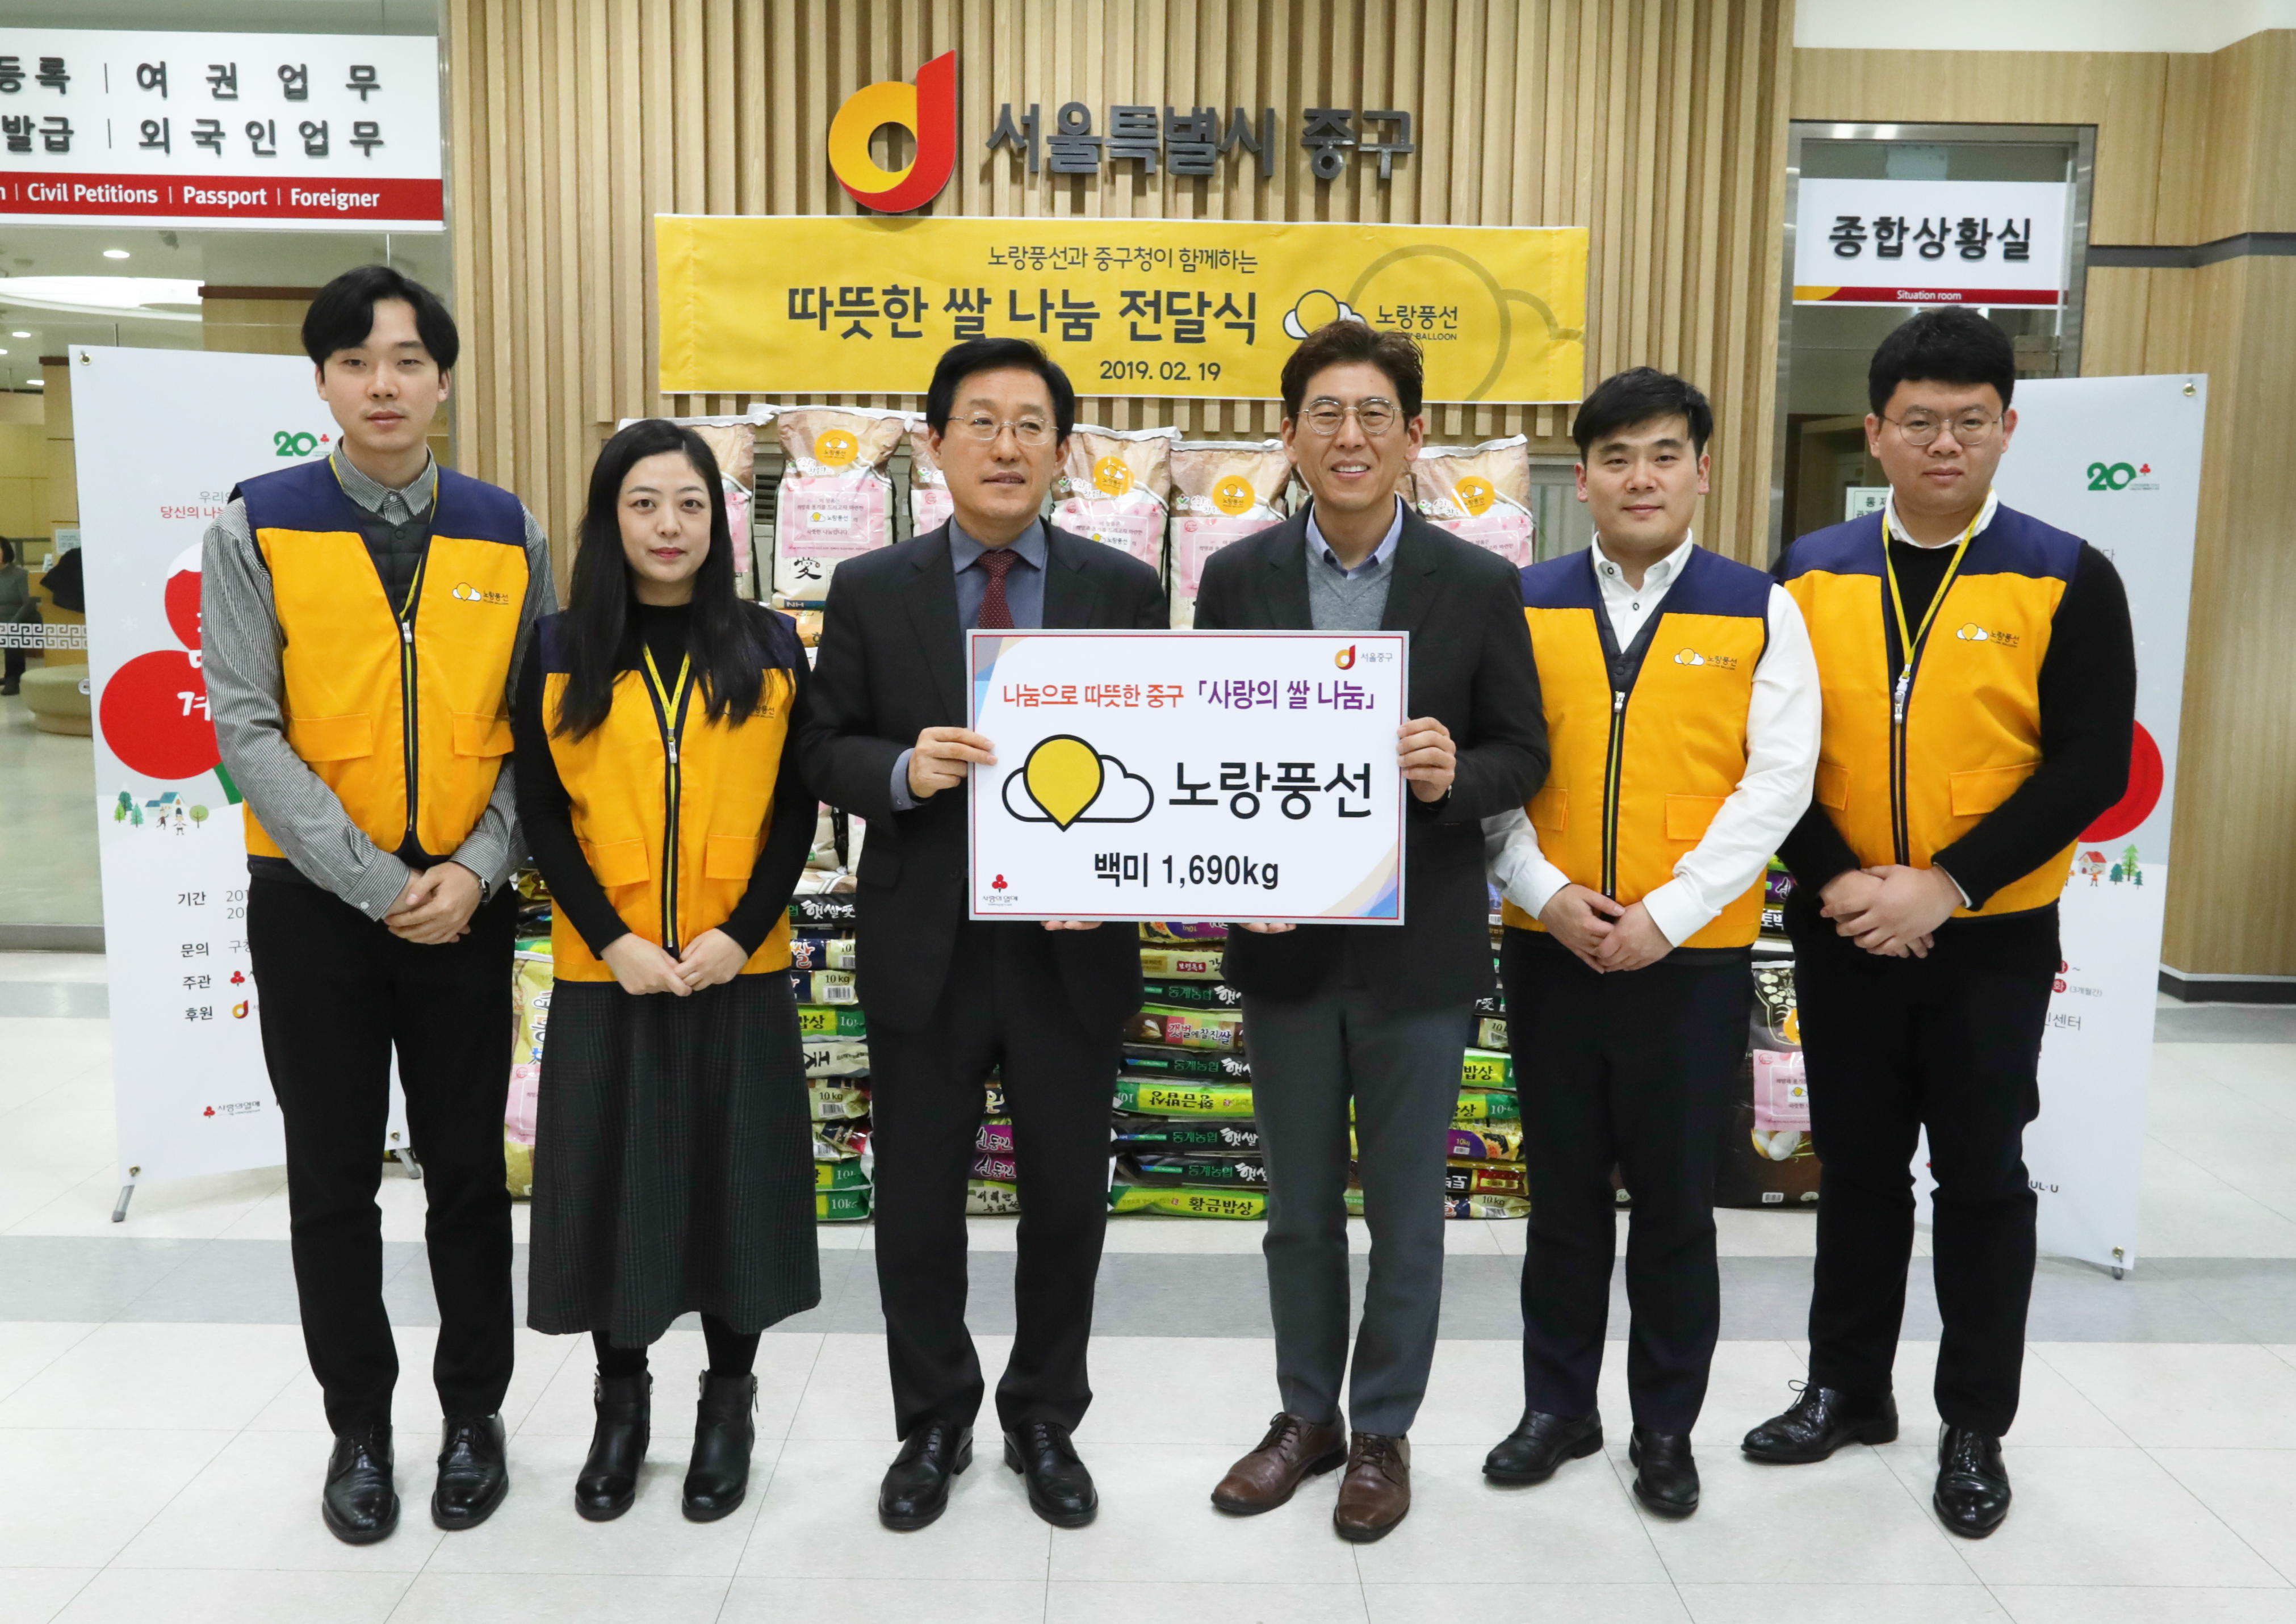 [이뉴스투데이]노랑풍선, 서울시 저소득층 위한 '쌀 나눔 전달식' 진행 